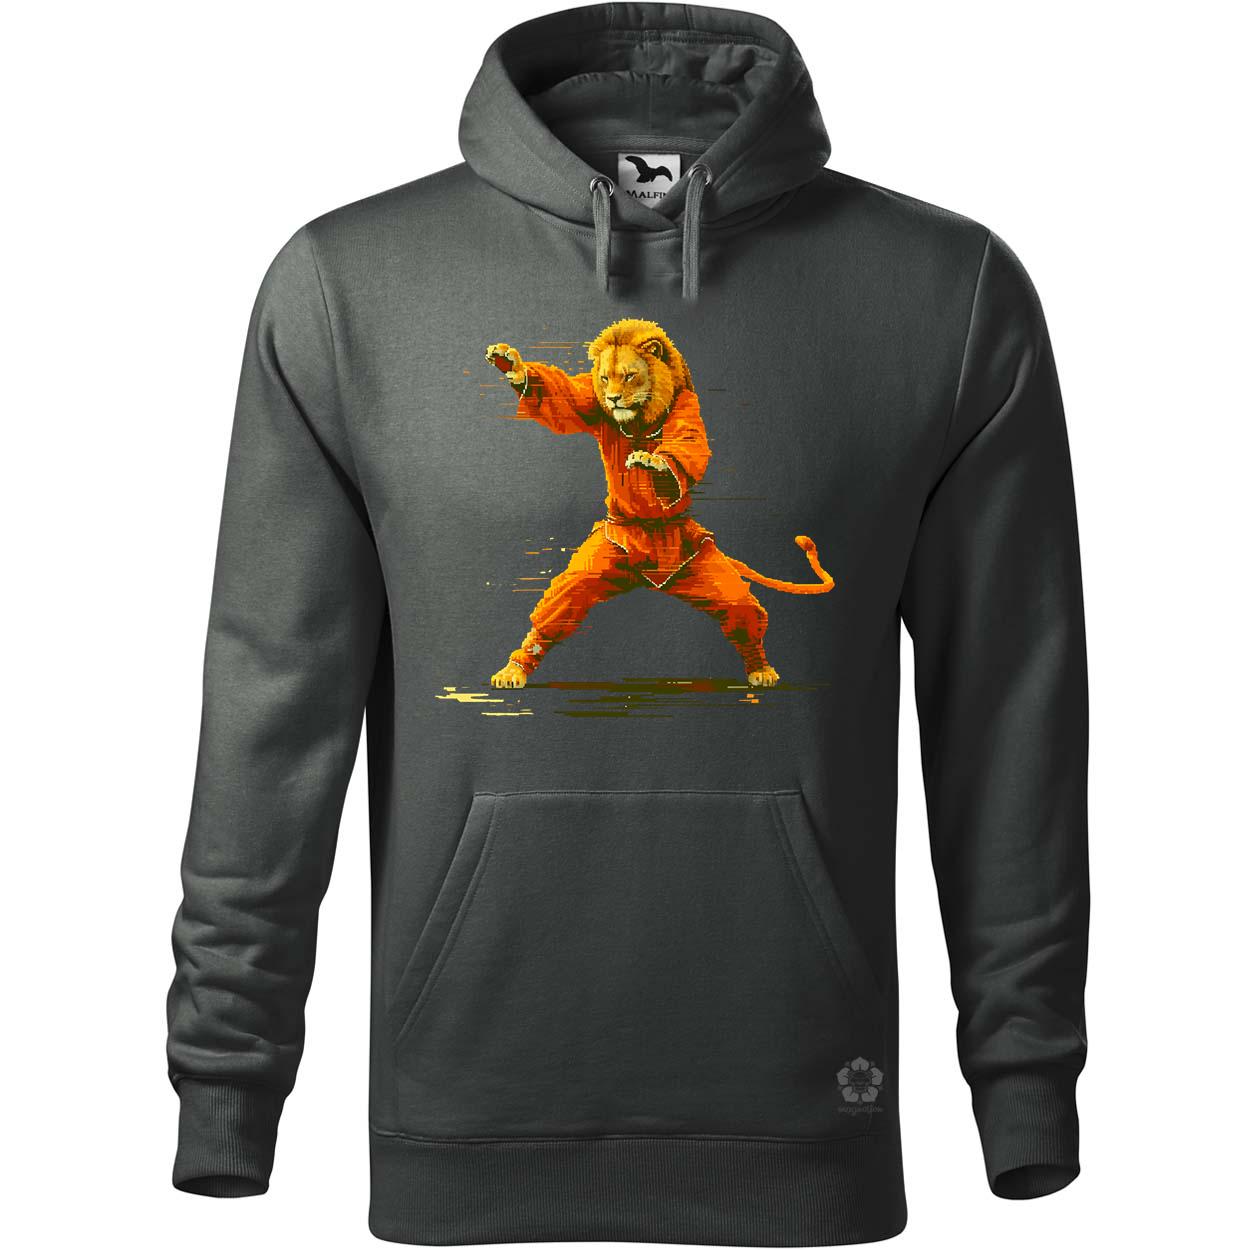 Pixelart kung fu oroszlán v1